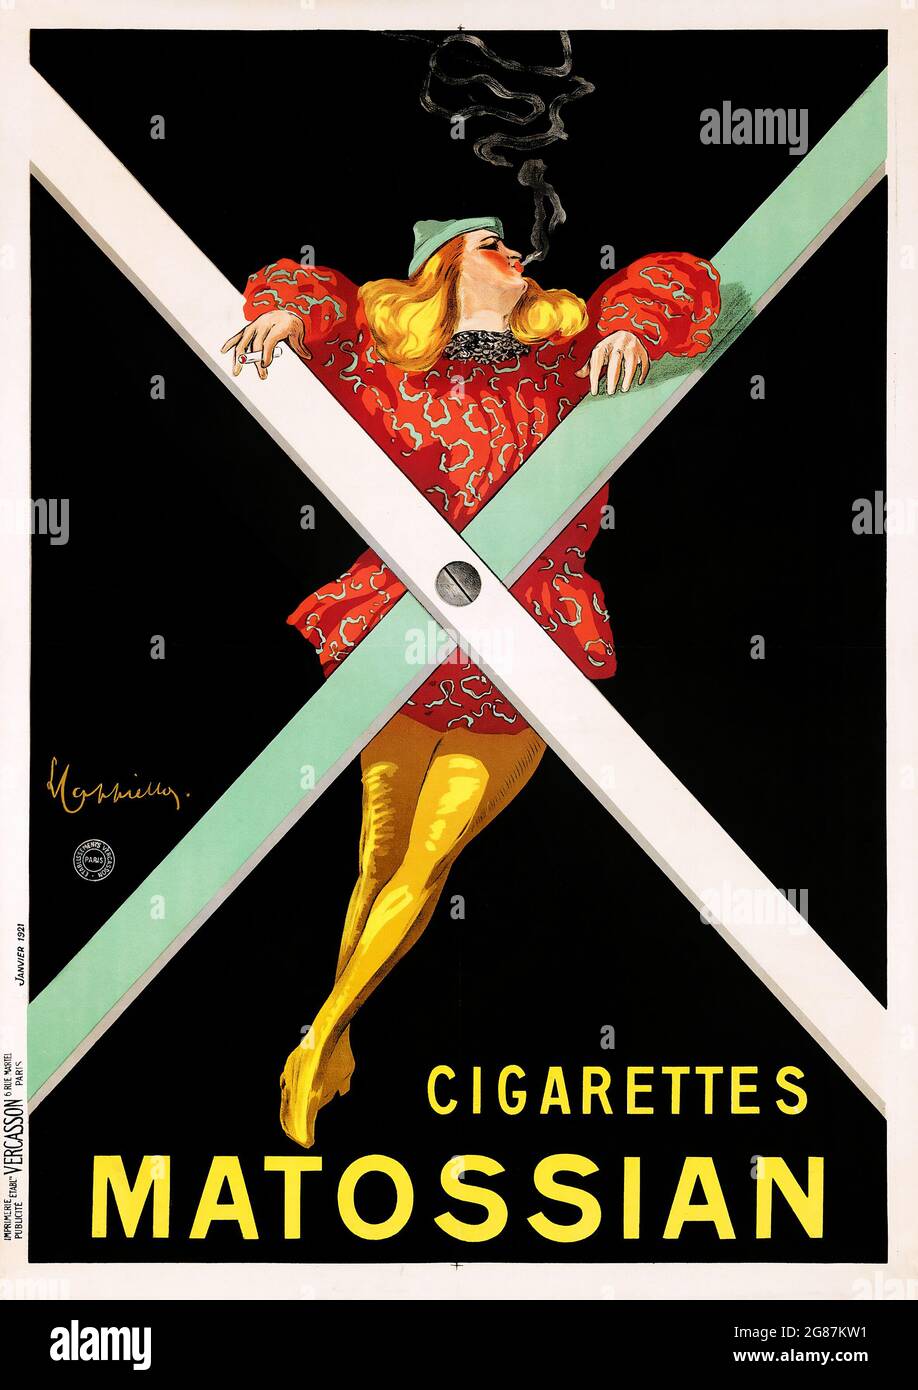 Cigarettes Matossian (1921). Französisches Poster von Leonetto Cappiello Artwork. Frau, die an einem Kreuz raucht. Stockfoto